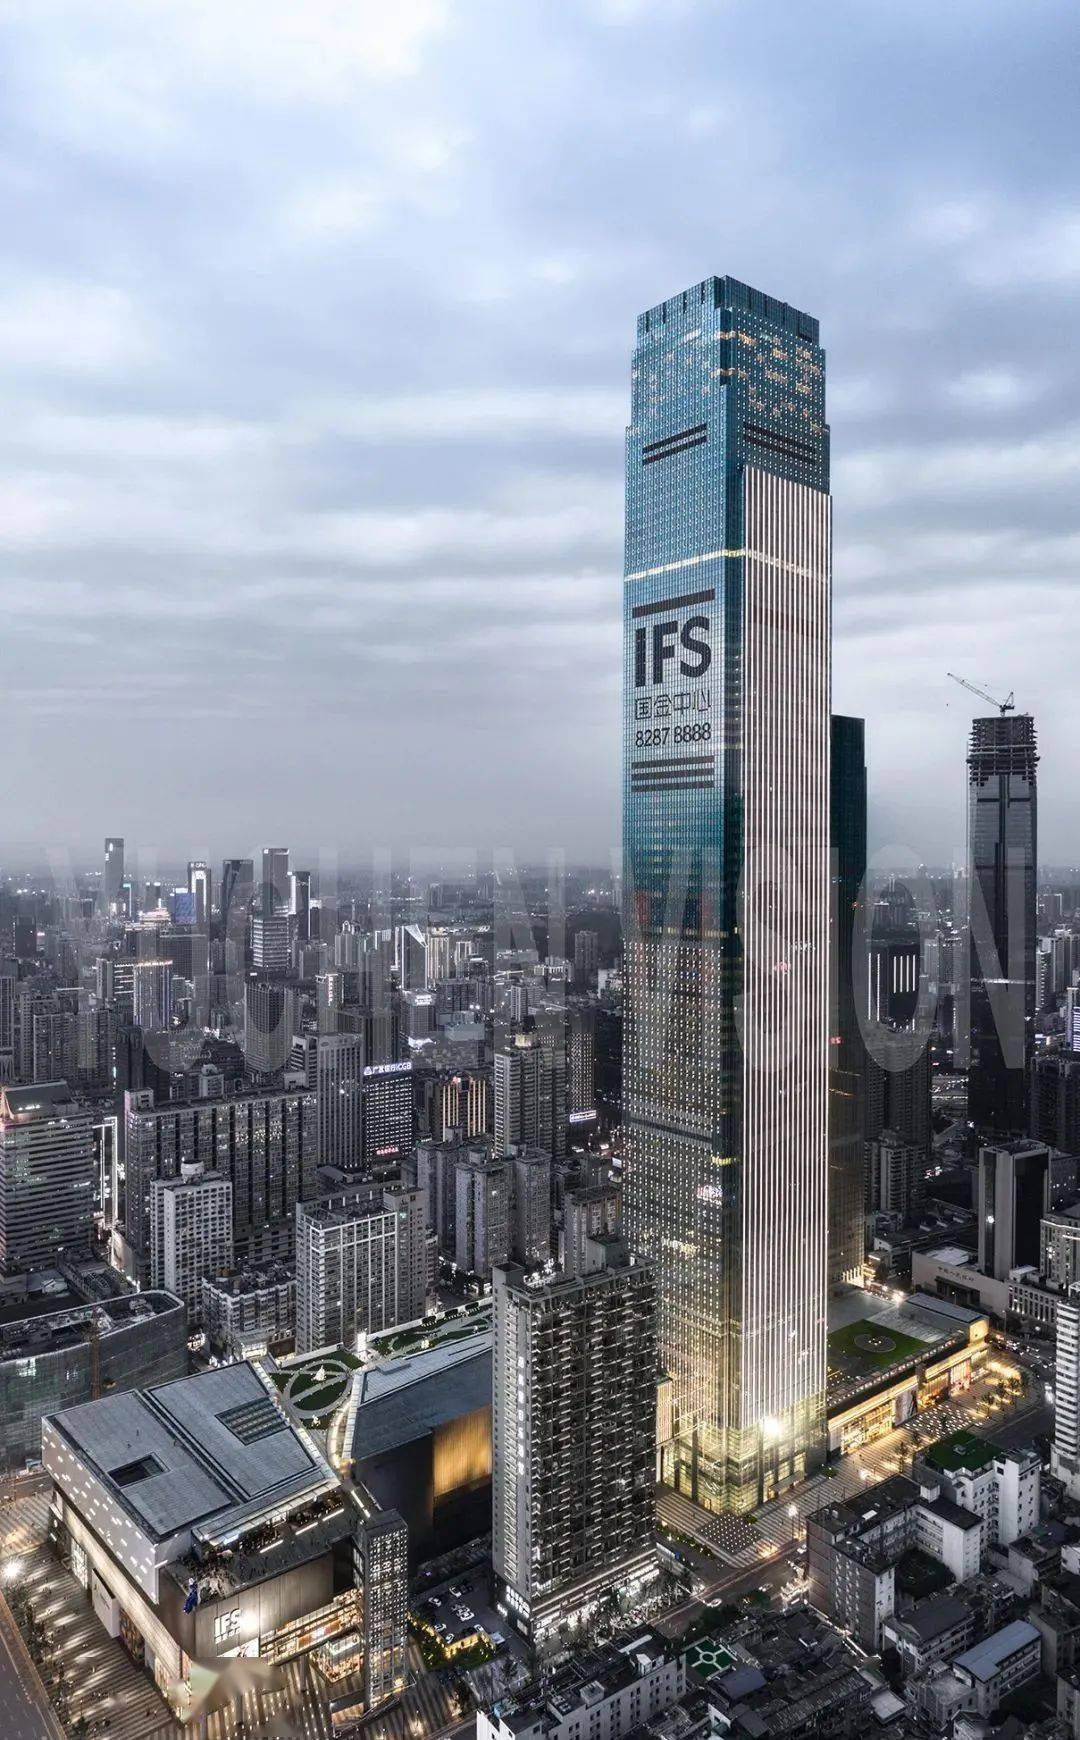 452米 城市:长沙苏州国际金融中心高度:450米 城市:苏州南京紫峰大厦